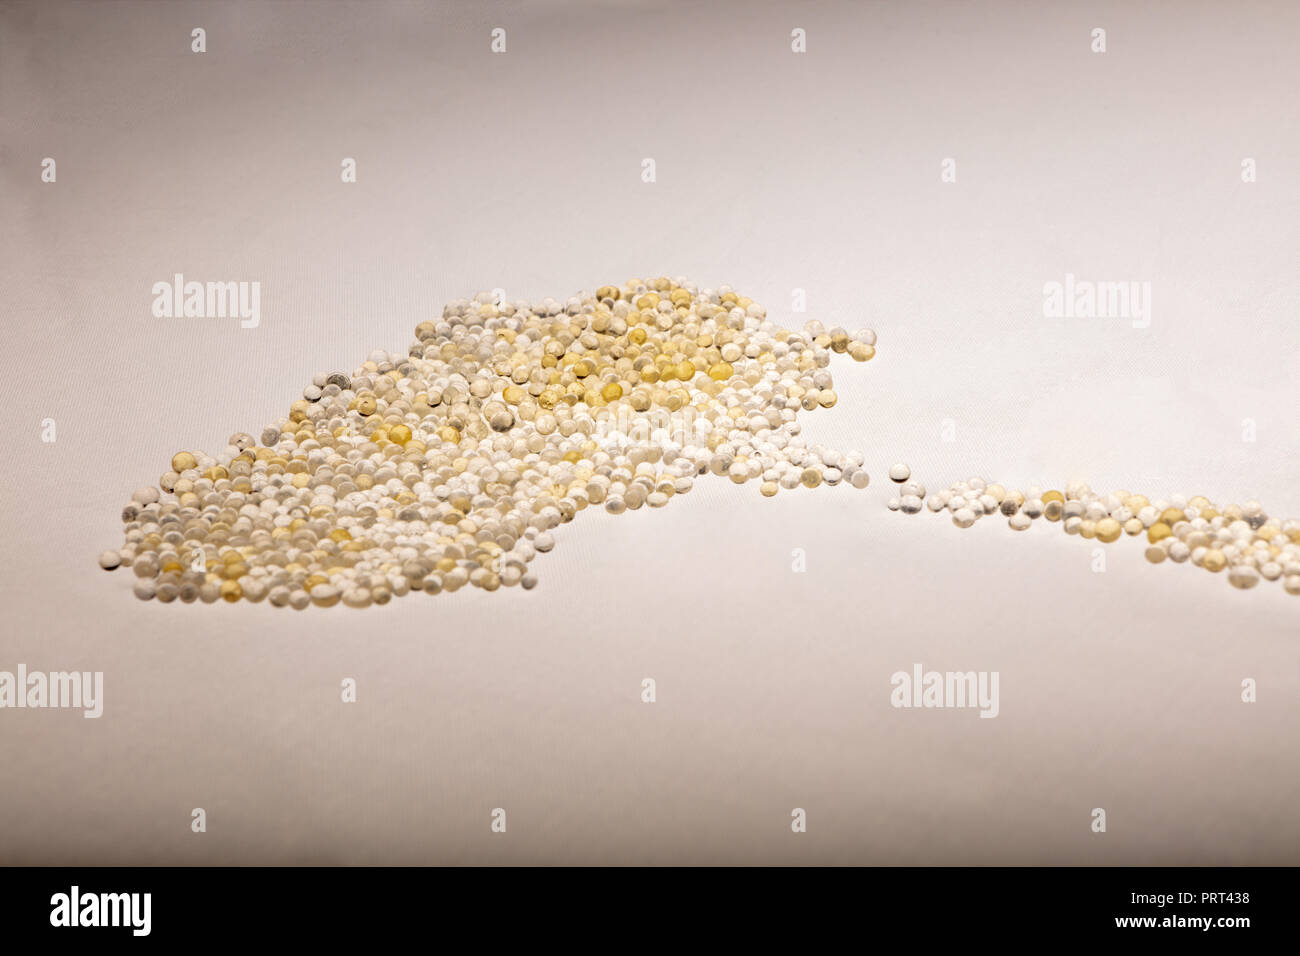 Makro von Silica Gel Kugeln Festlegung auf weißem Hintergrund. Ihre  Verwendung Schimmel, Korrosion, Gerüche und andere Beschädigung durch  Feuchtigkeit zu verhindern Stockfotografie - Alamy